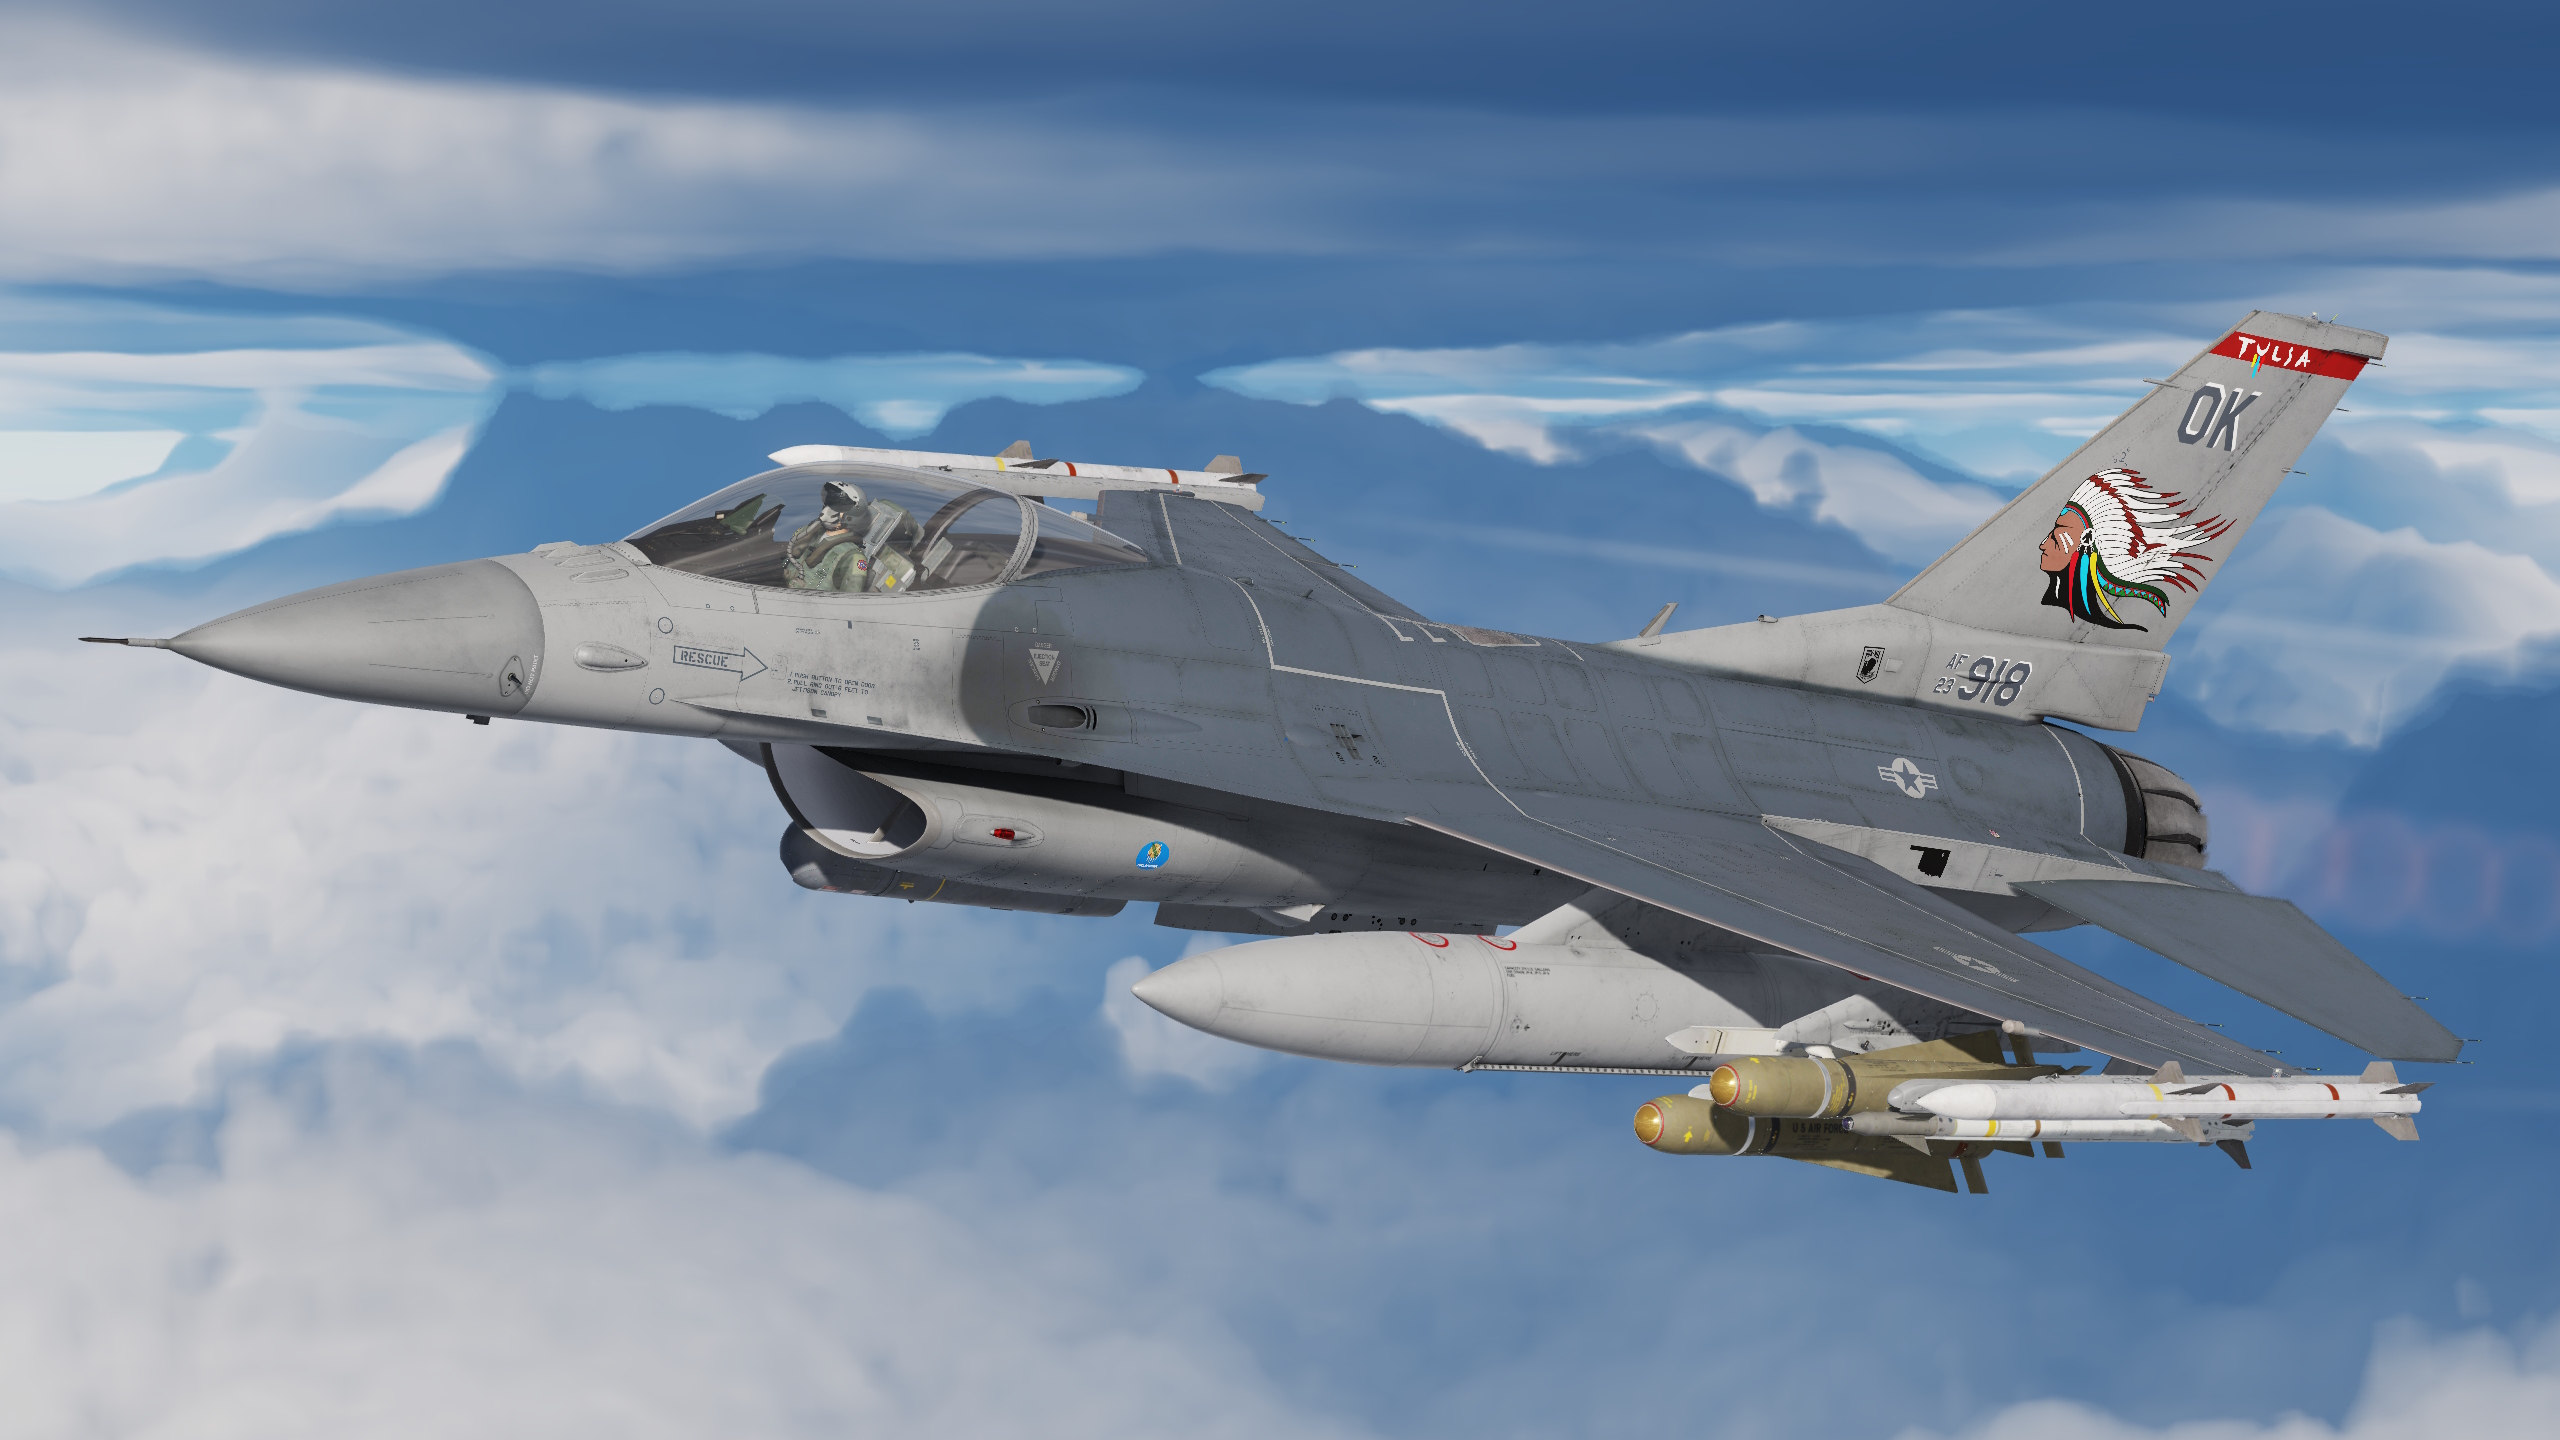 125th Fighter Squadron "Tulsa Vipers"